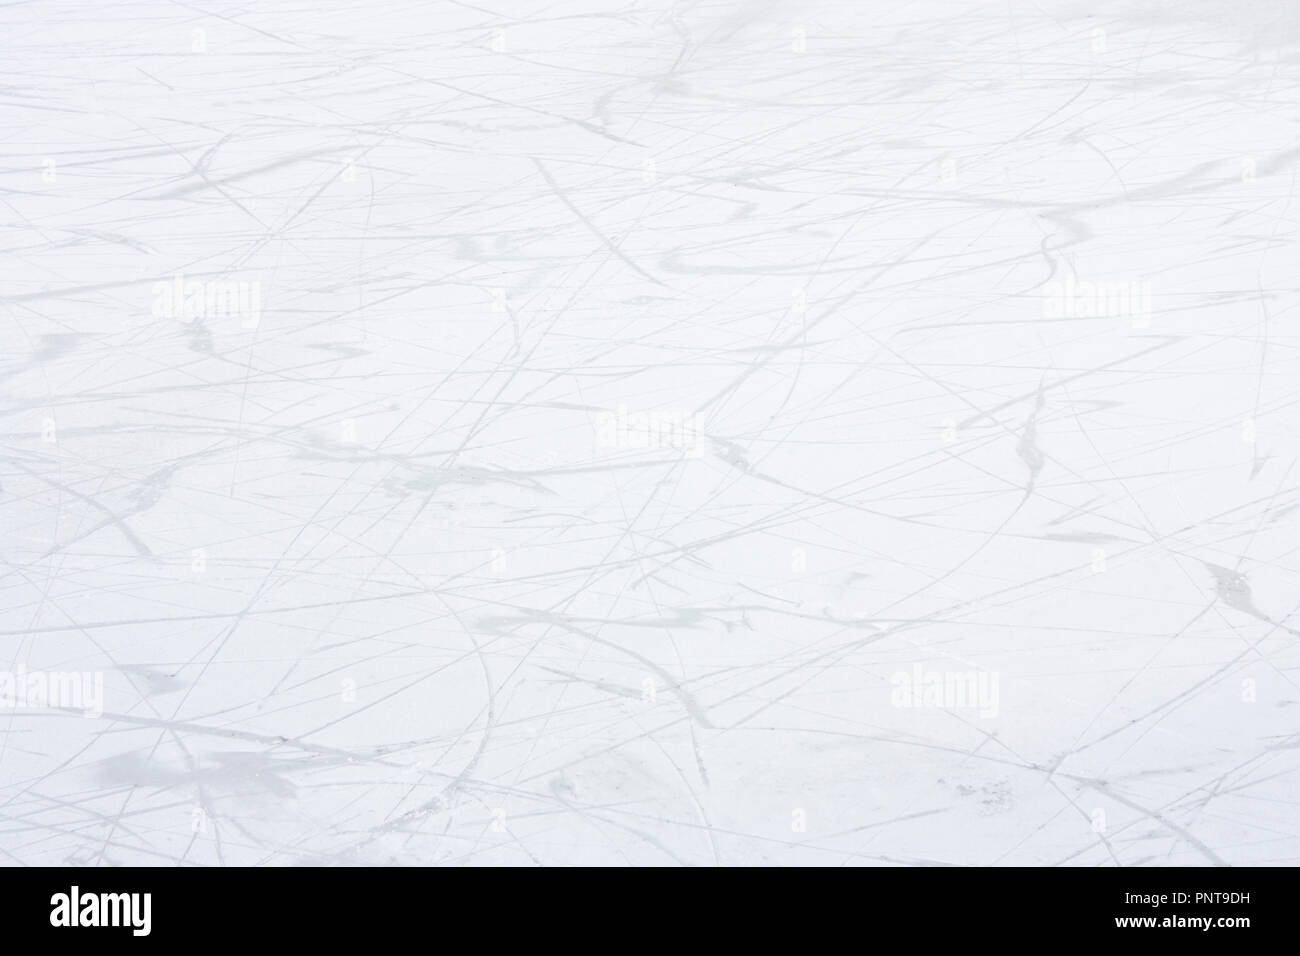 Abstract soft scribble linee su sfondo bianco: inverno pista di pattinaggio su ghiaccio dettaglio con lama segni e graffi Foto Stock